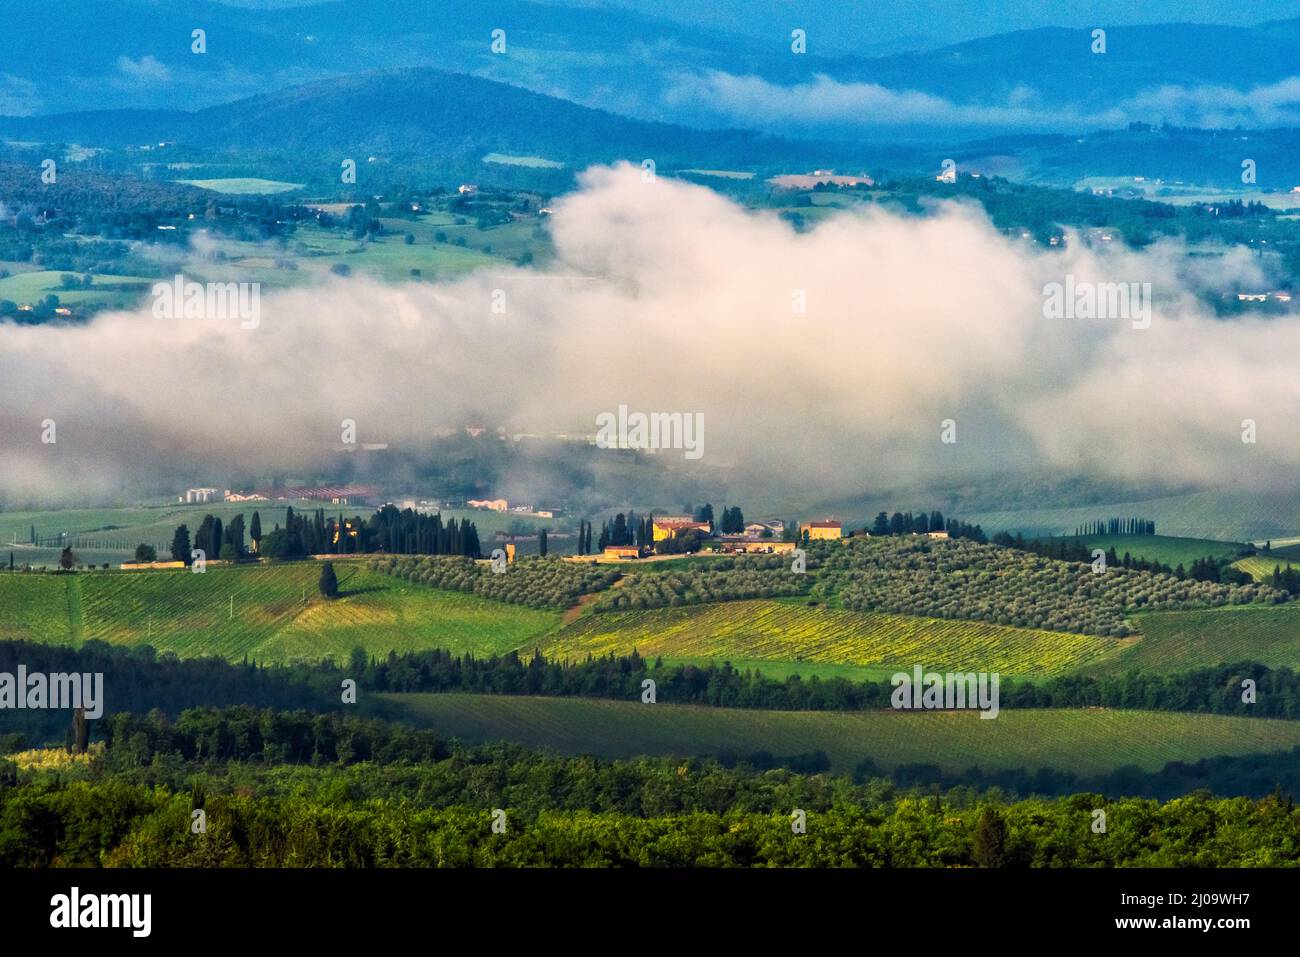 Village avec vignoble dans la brume matinale, Chianti, région Toscane, Italie Banque D'Images